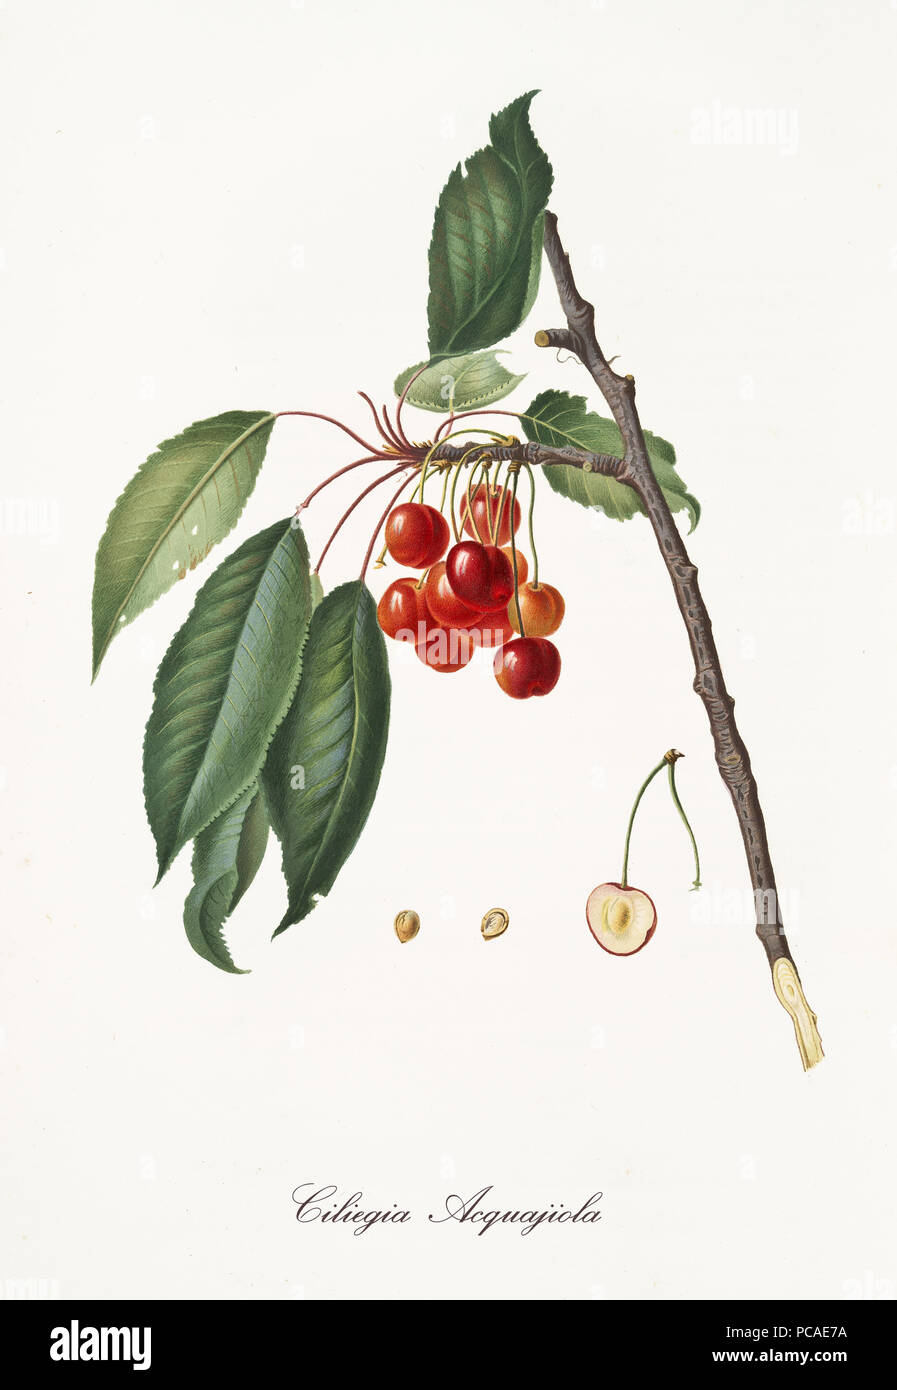 Cerise rouge suspendu à leur branche avec des feuilles et de l'article du fruit. Des éléments isolés sur fond blanc. Vieille illustration botanique détaillée de Giorgio Gallesio publié en 1817, 1839 Banque D'Images